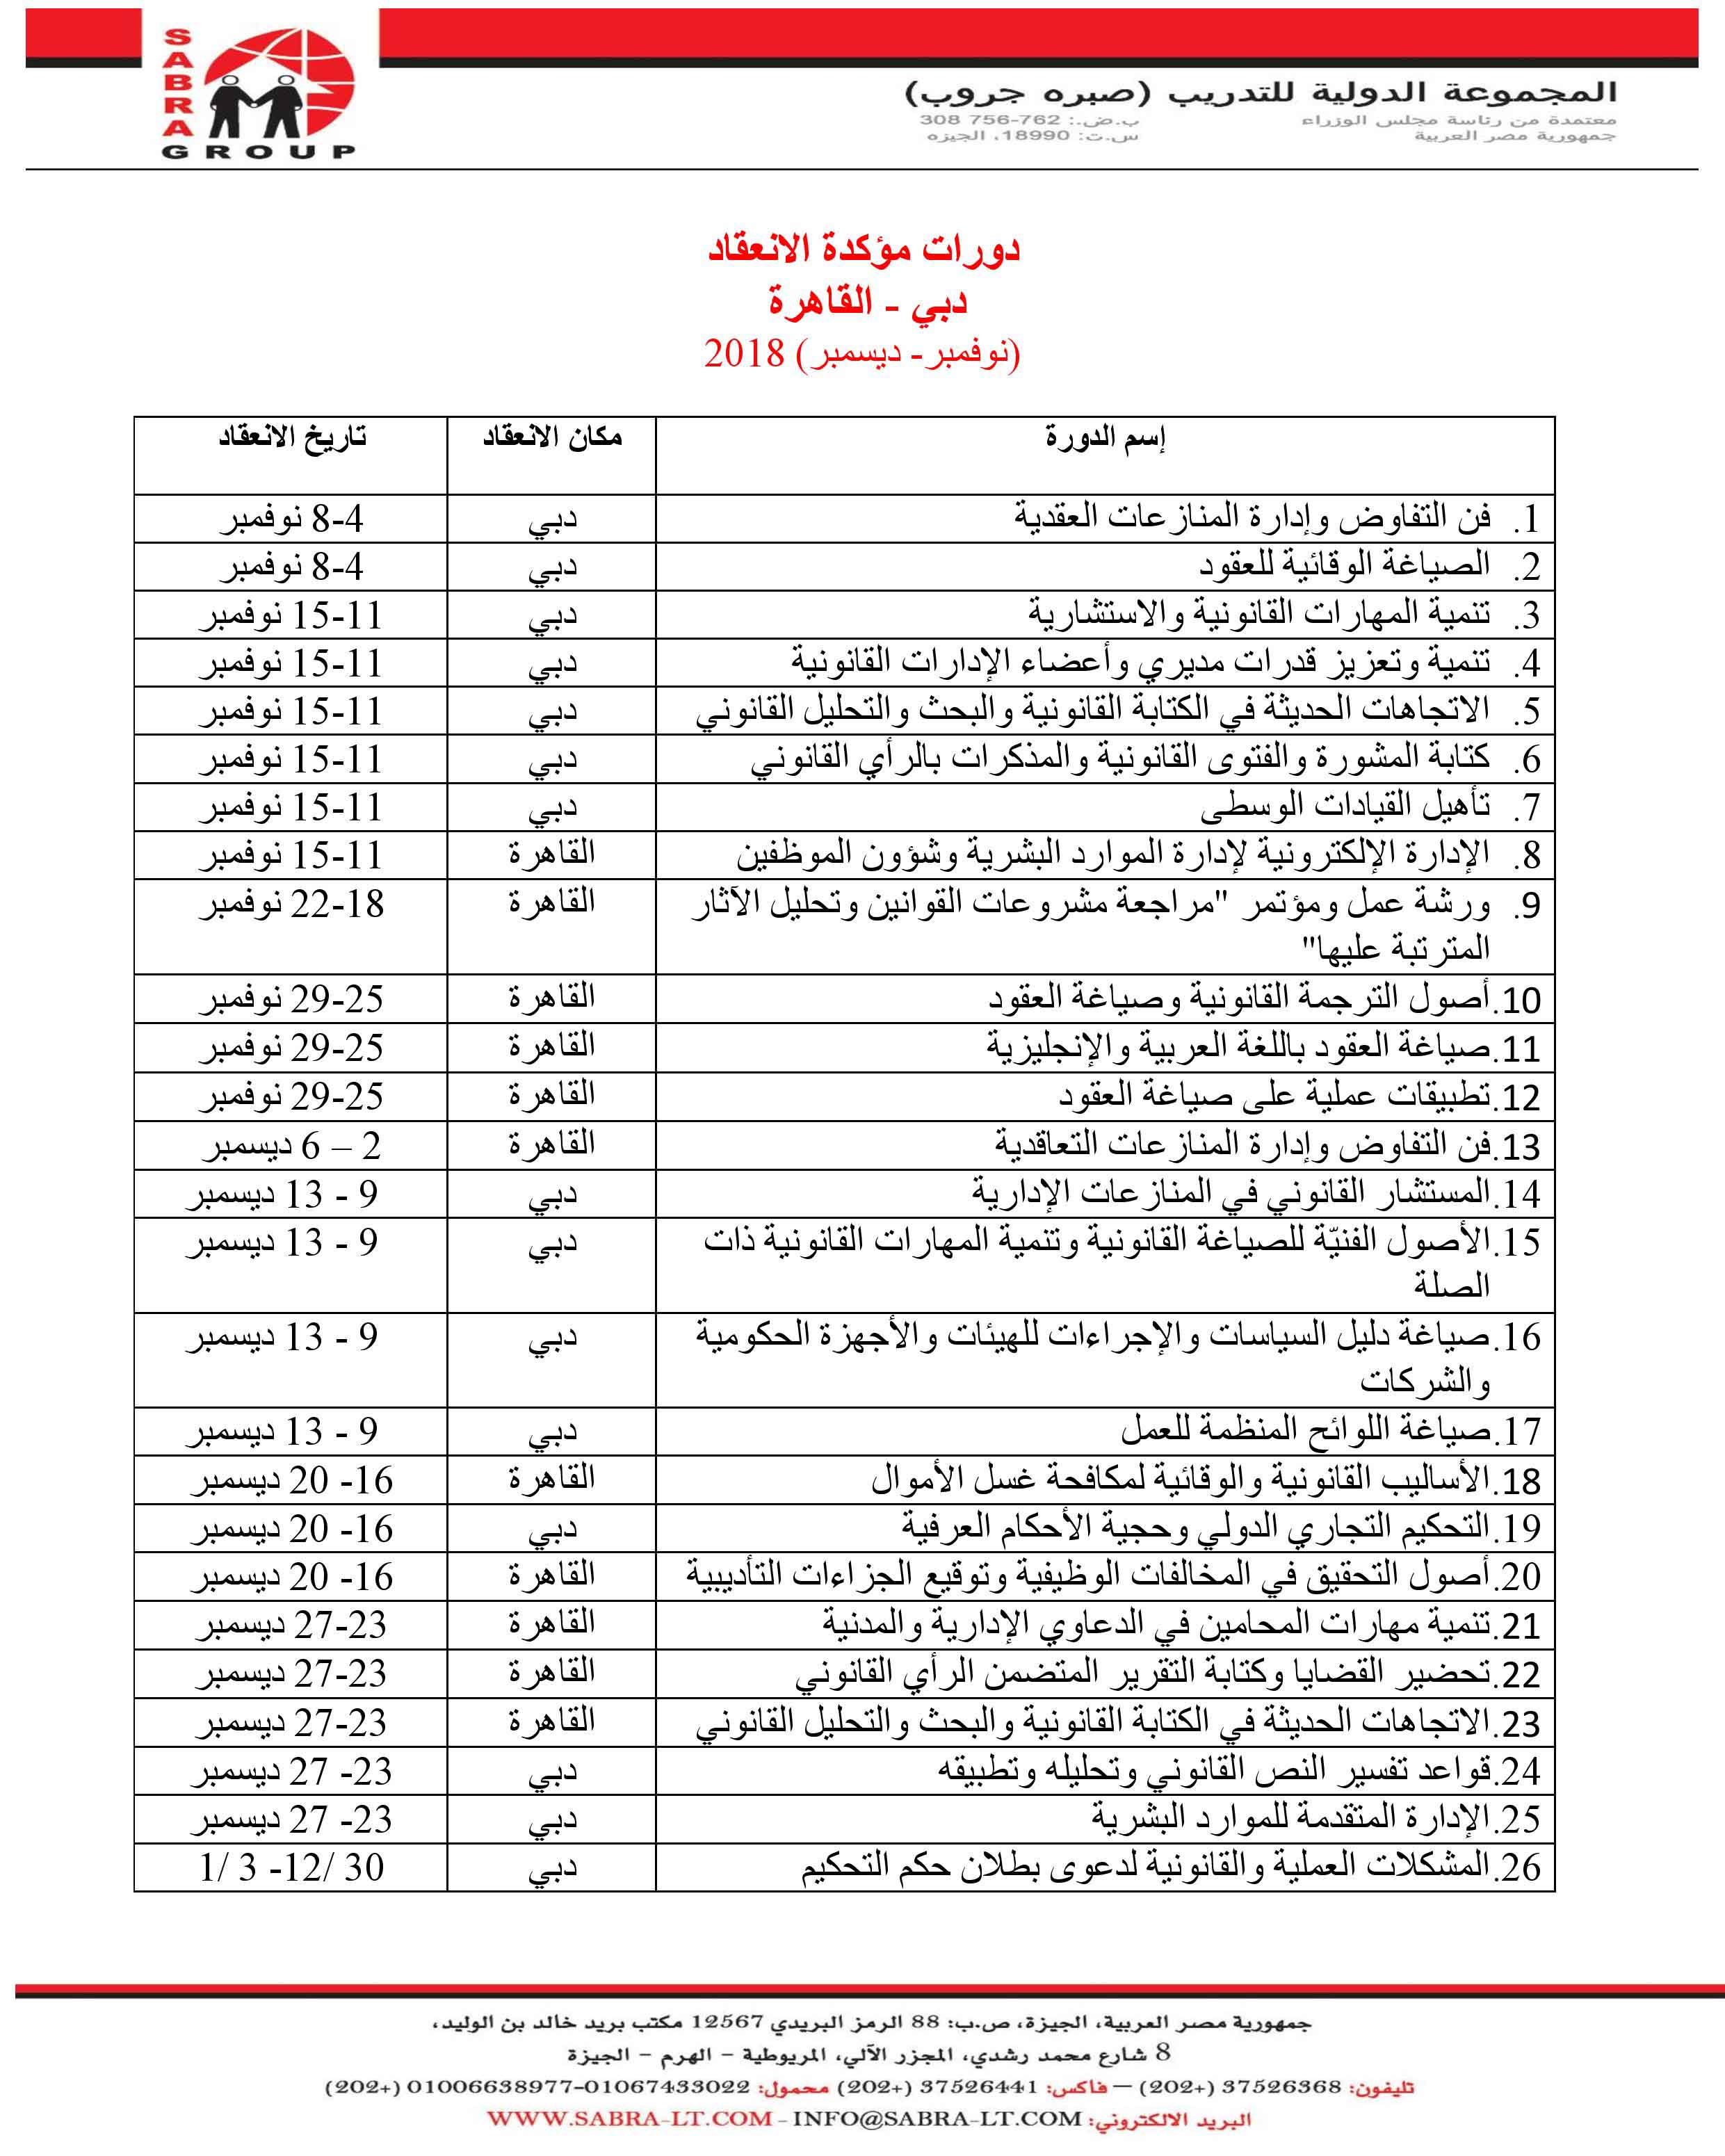 دورات مؤكدة الانعقاد في القاهرة - دبي  P_102786c5i1